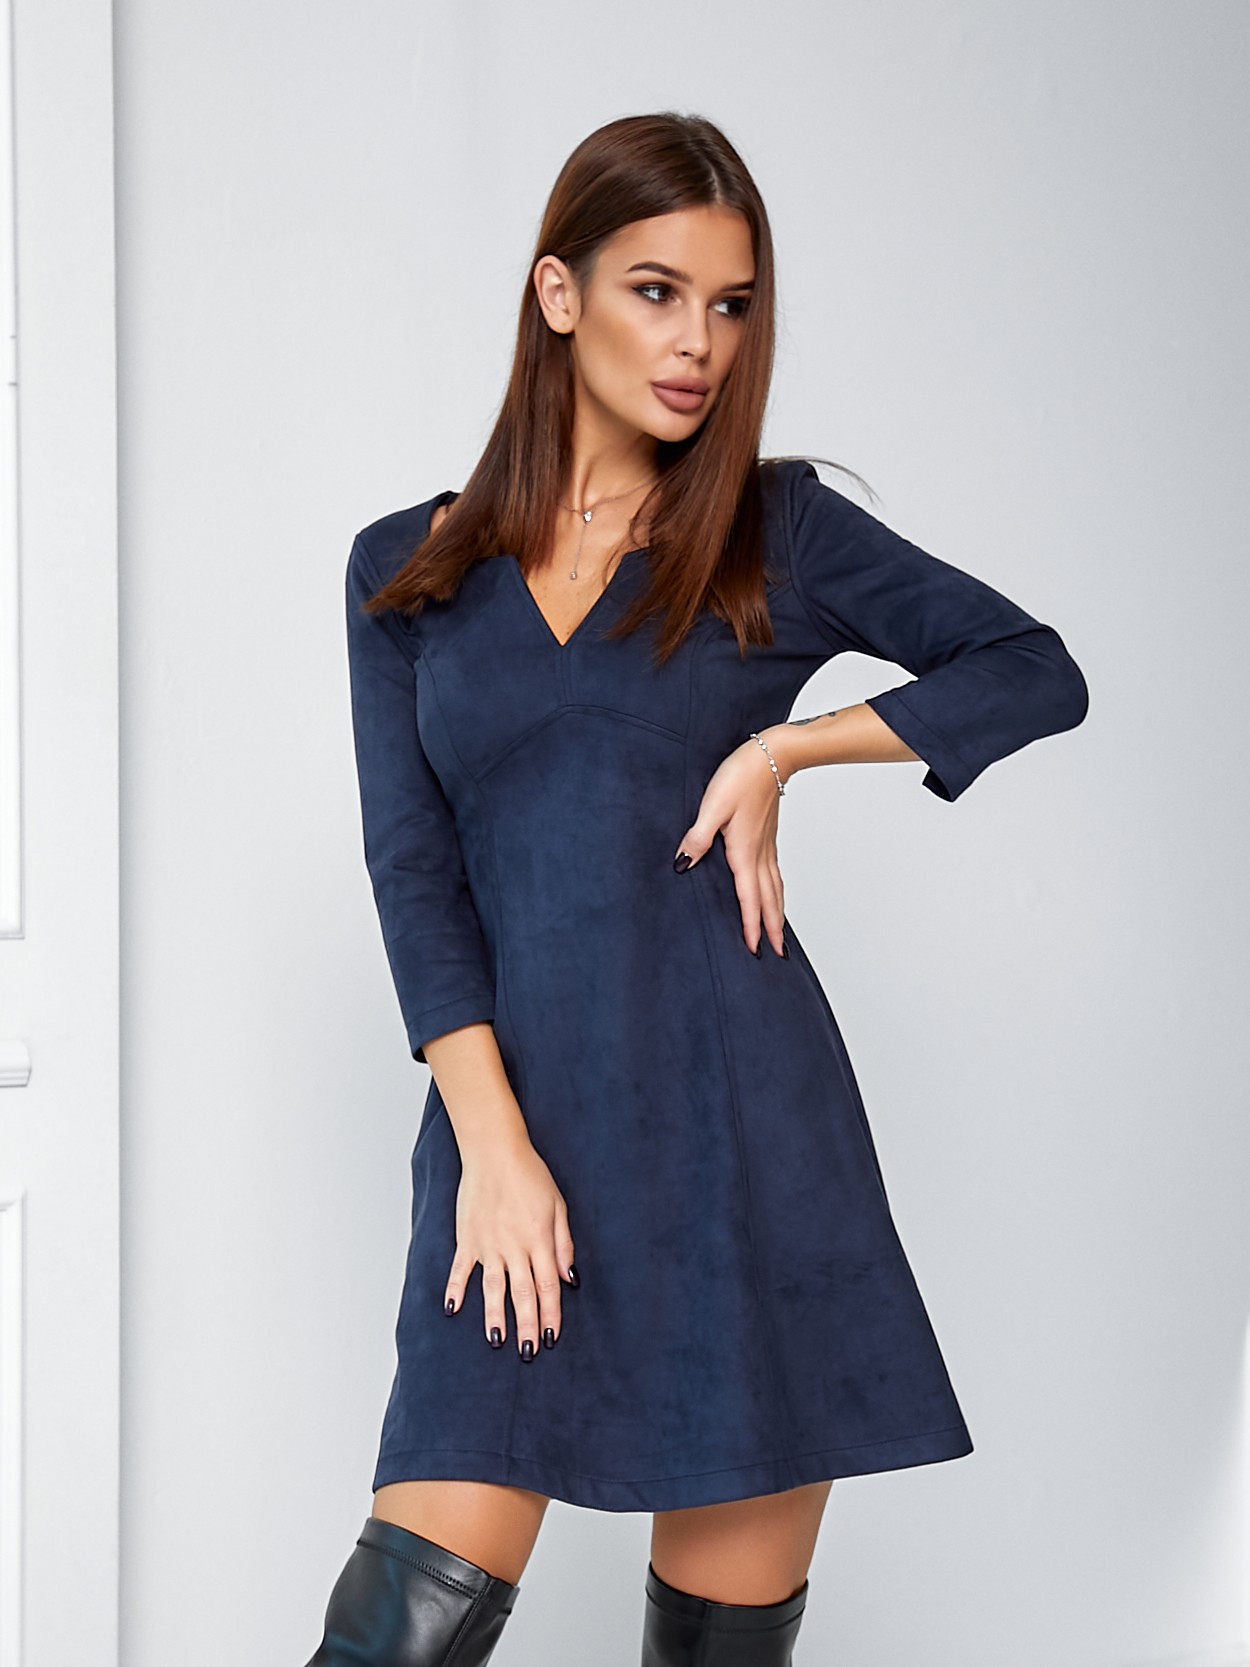 Женское платье короткое замш темно-синее 02732 цена